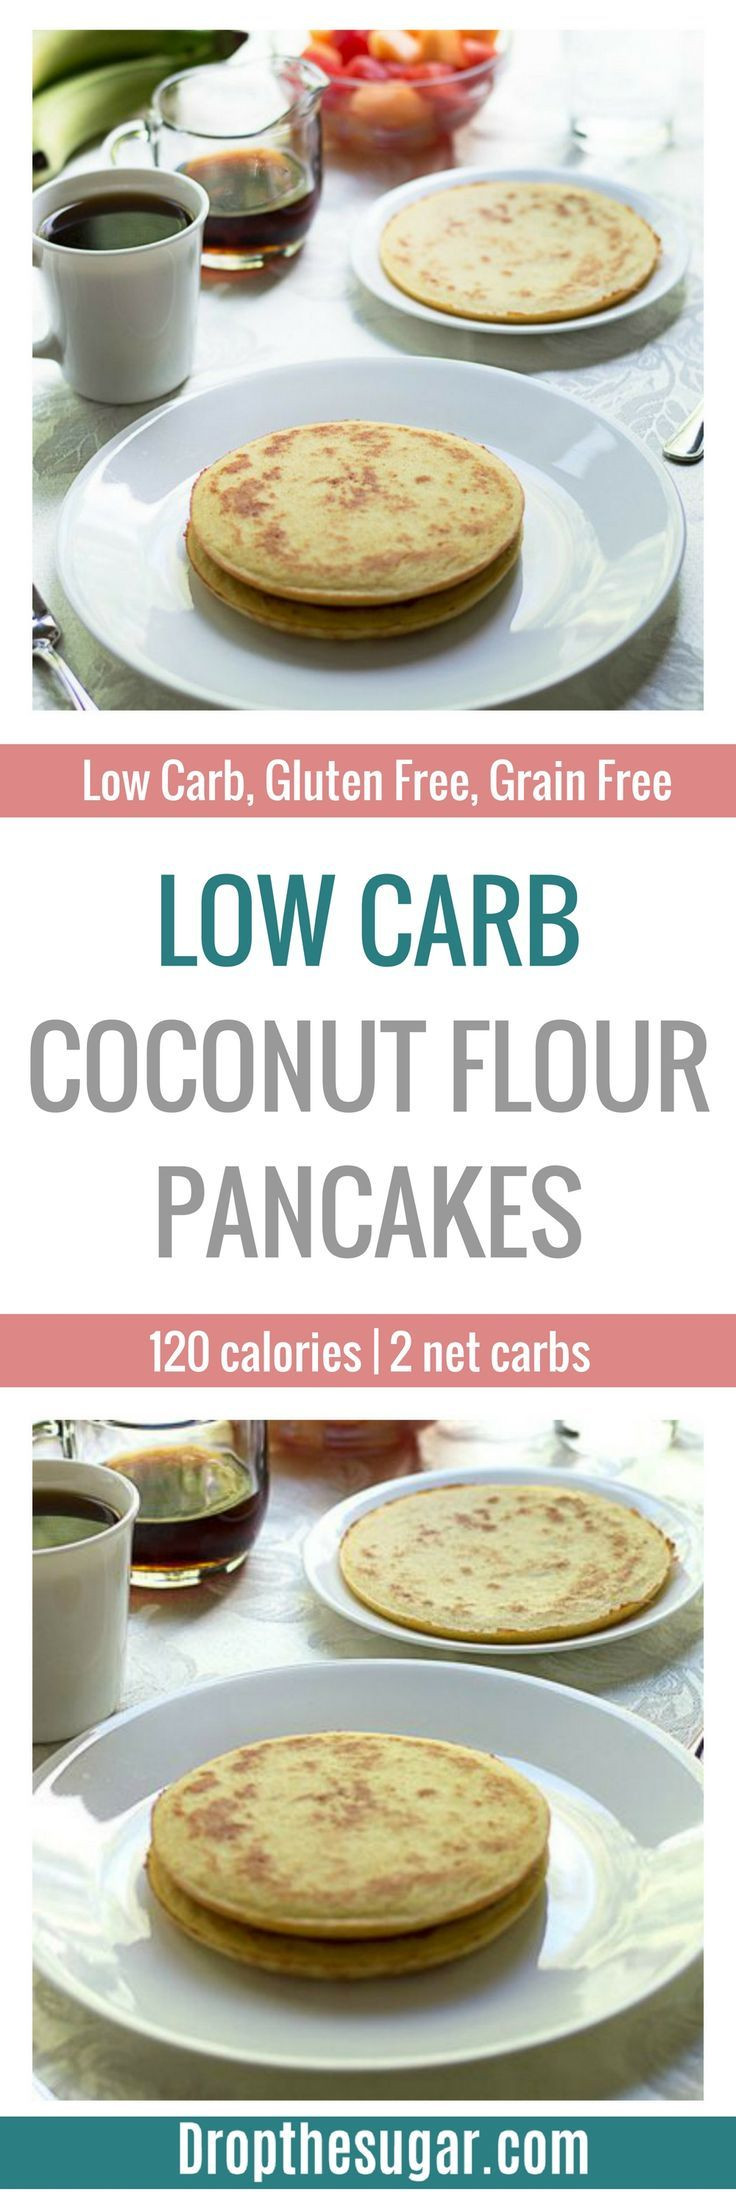 Low Carb Recipes With Coconut Flour
 Low Carb Coconut Flour Pancakes